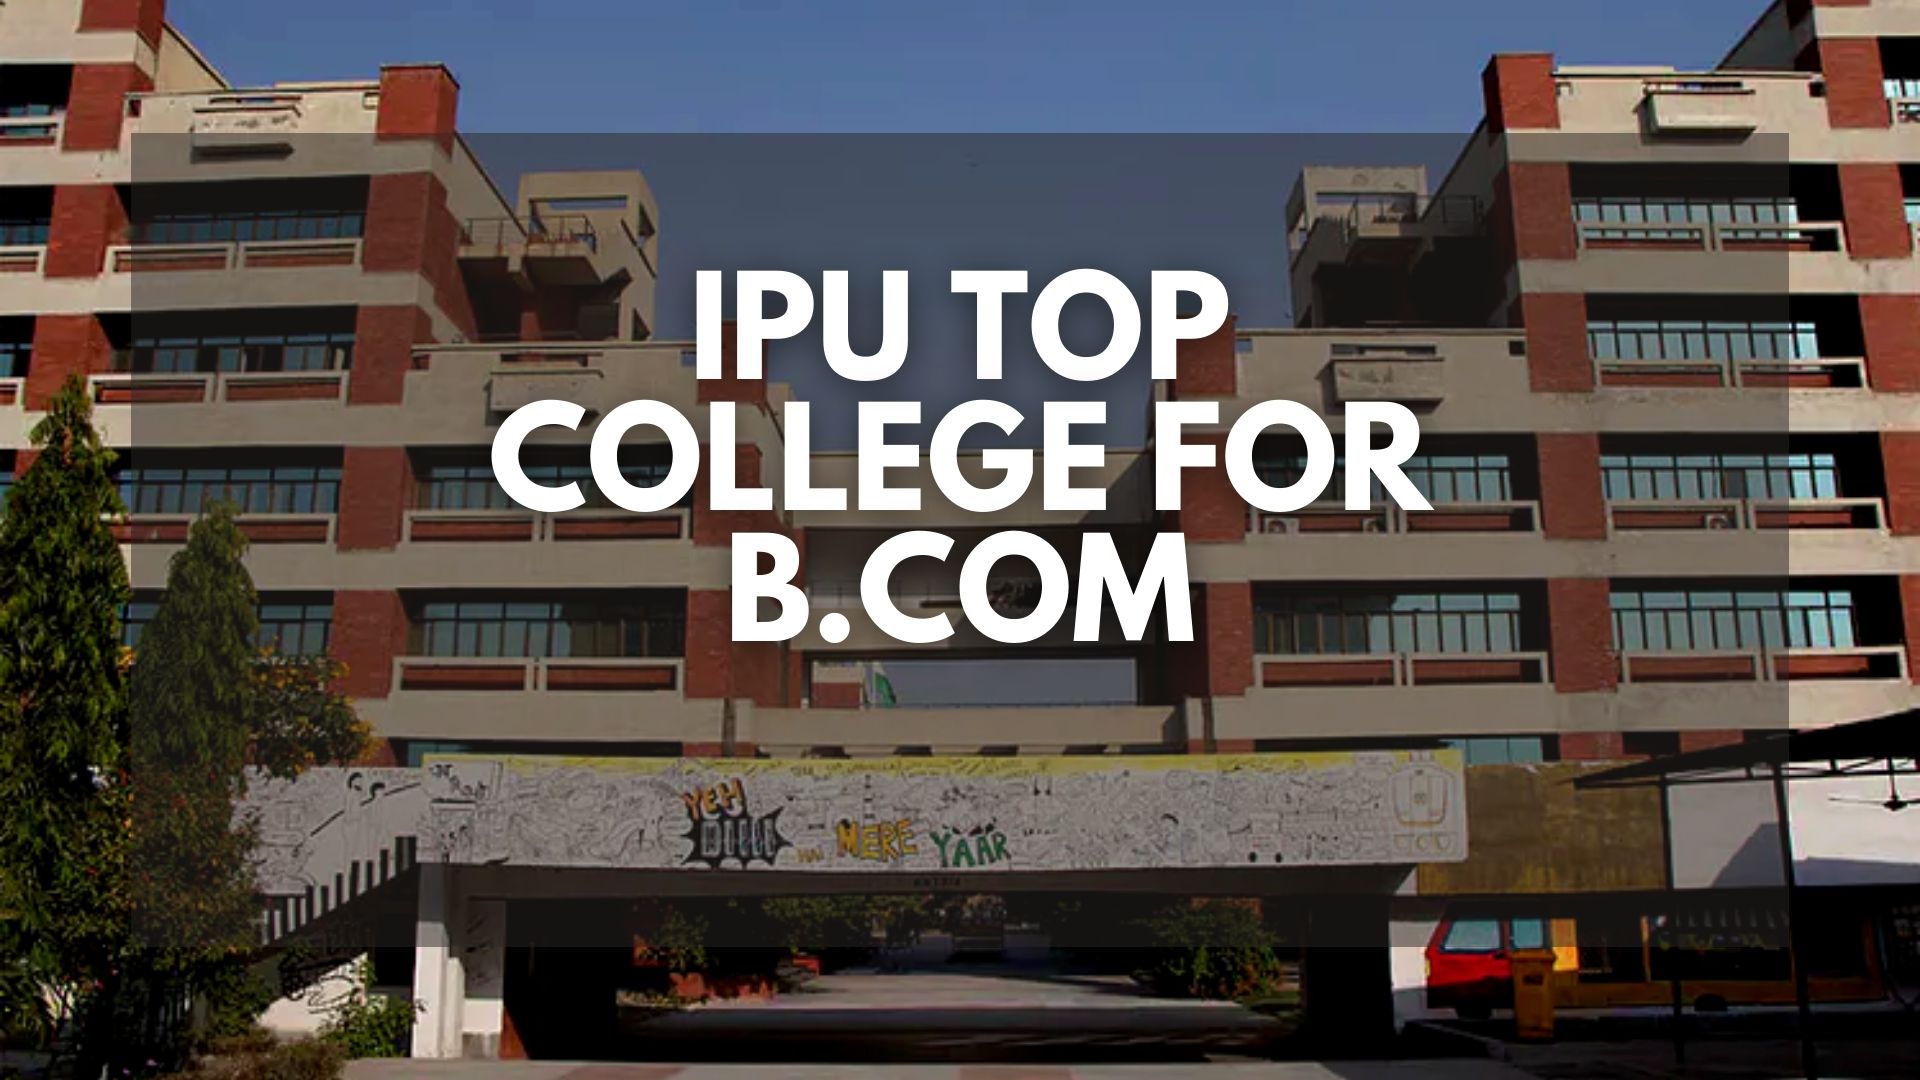 B.COM TOP COLLEGES in IPU